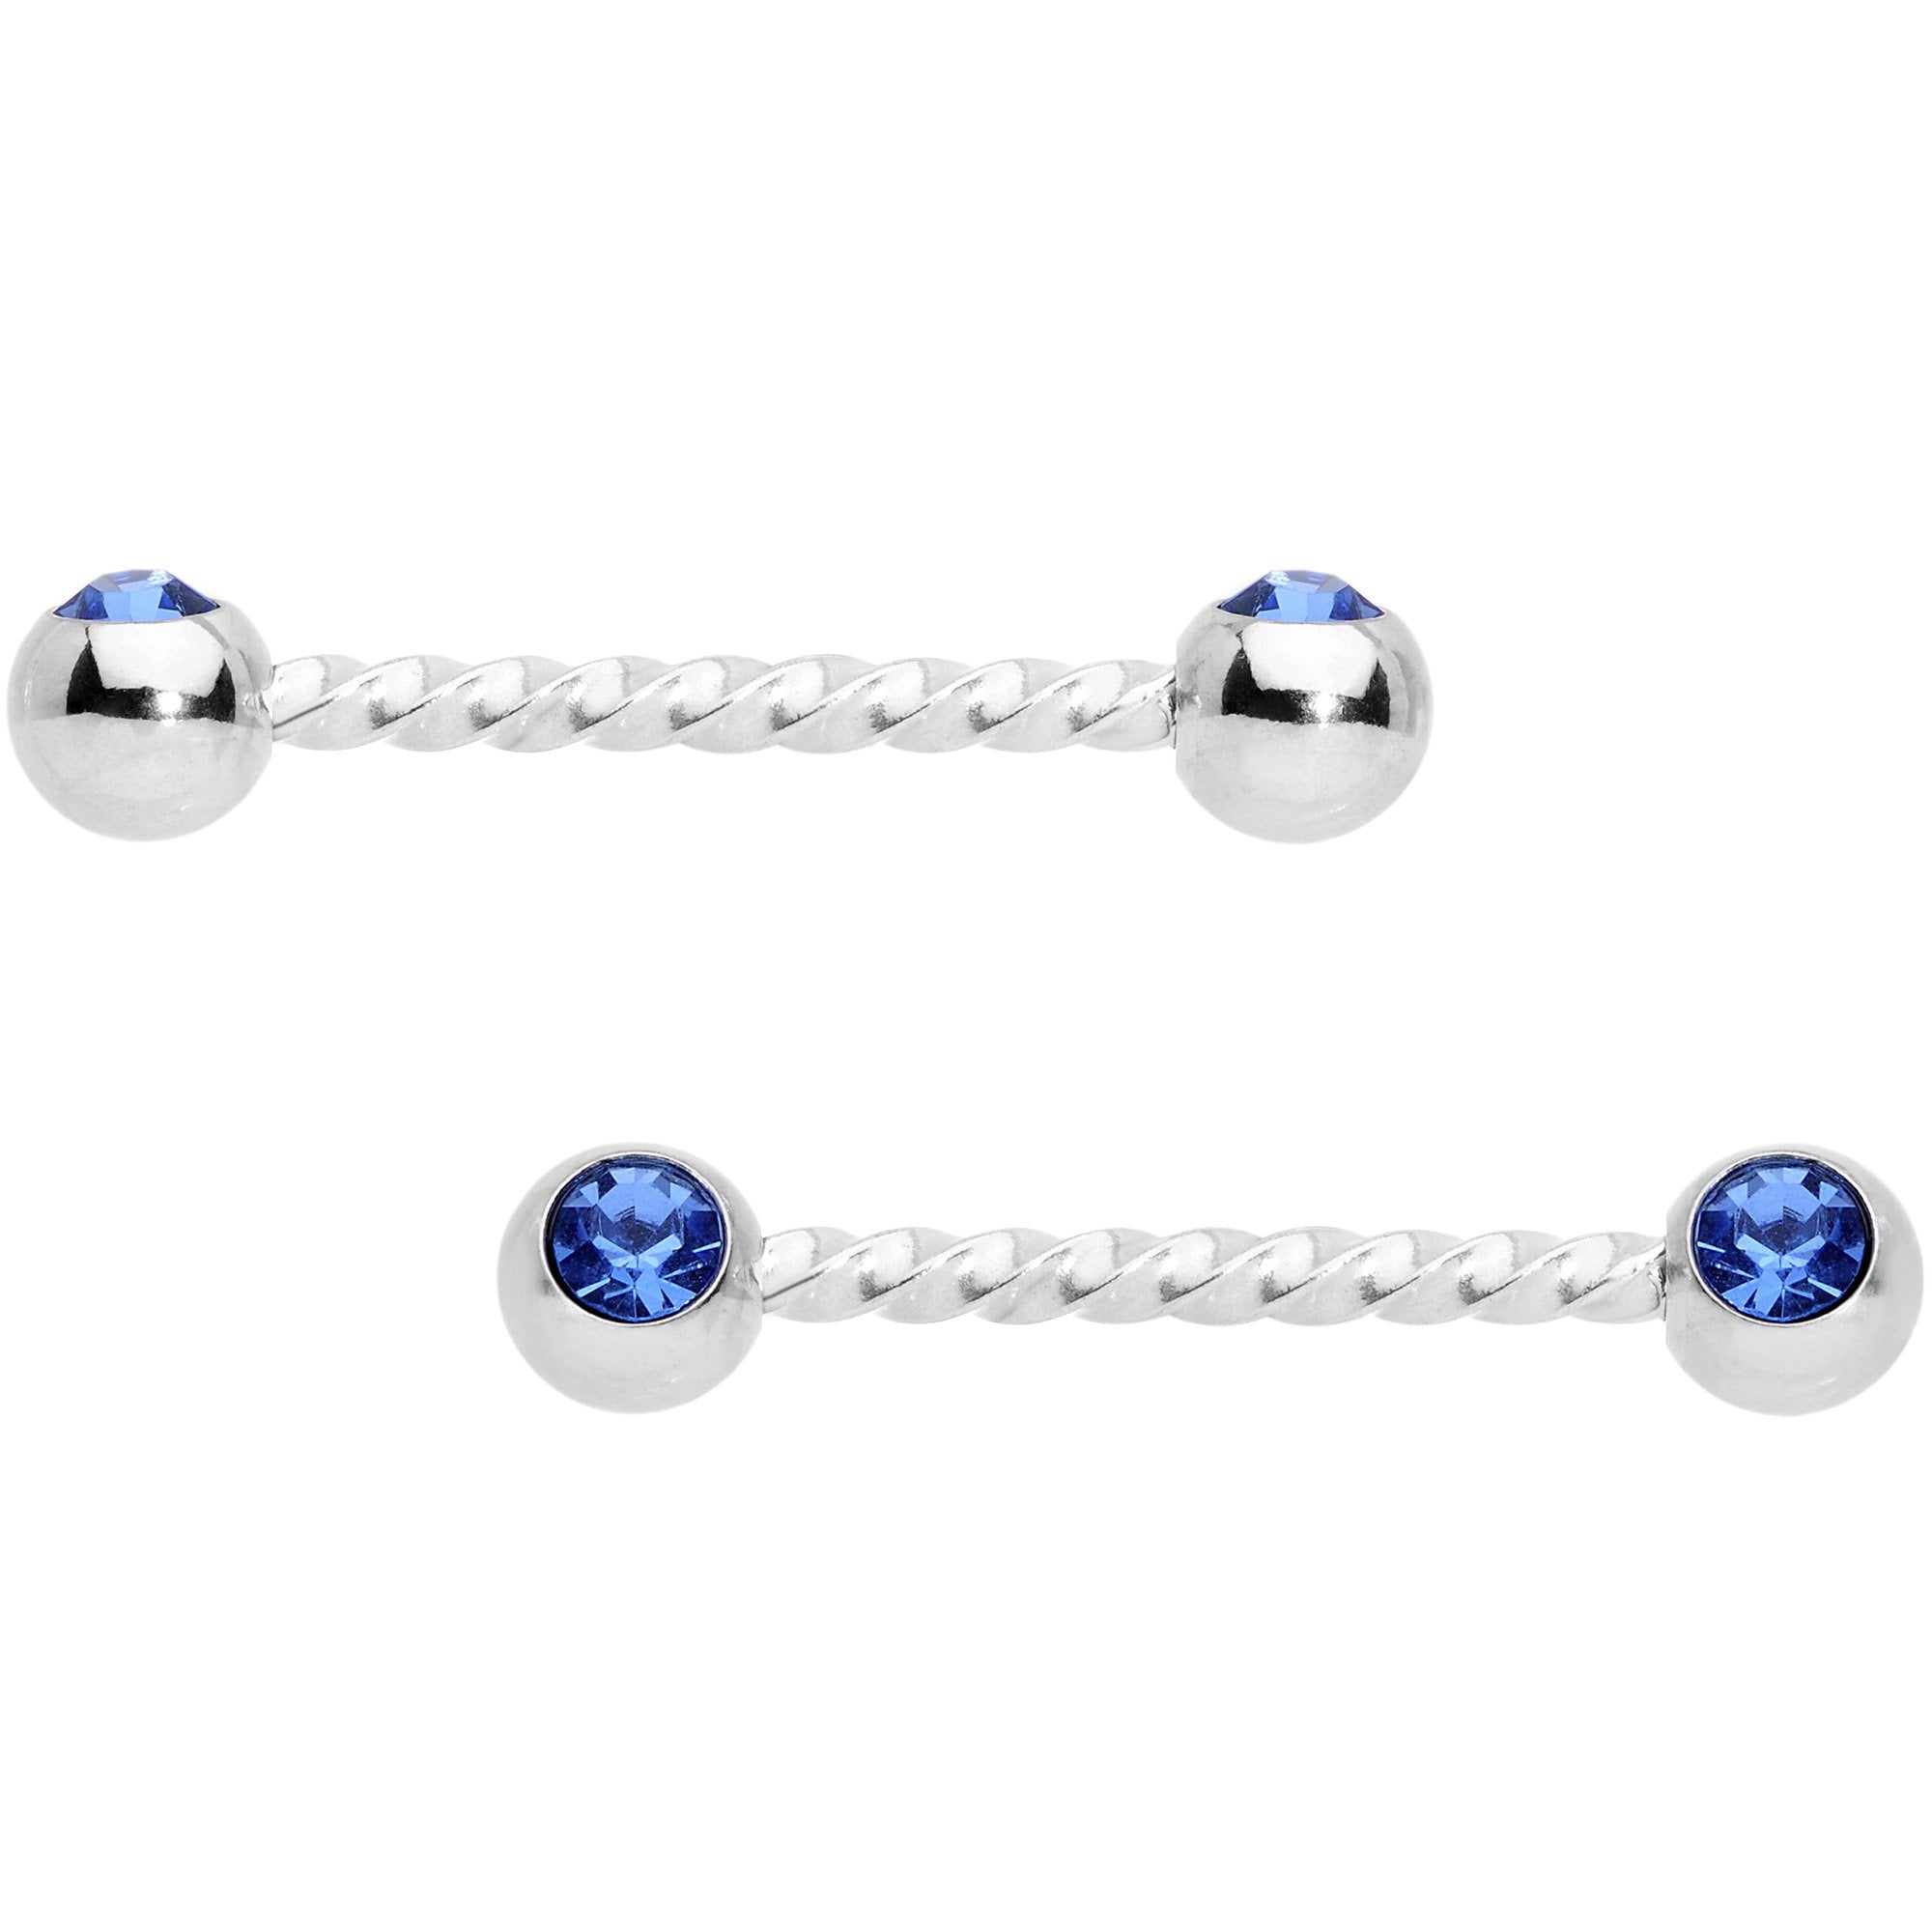 14 Gauge 5/8 Blue Gem Twisted Barbell Nipple Ring Set